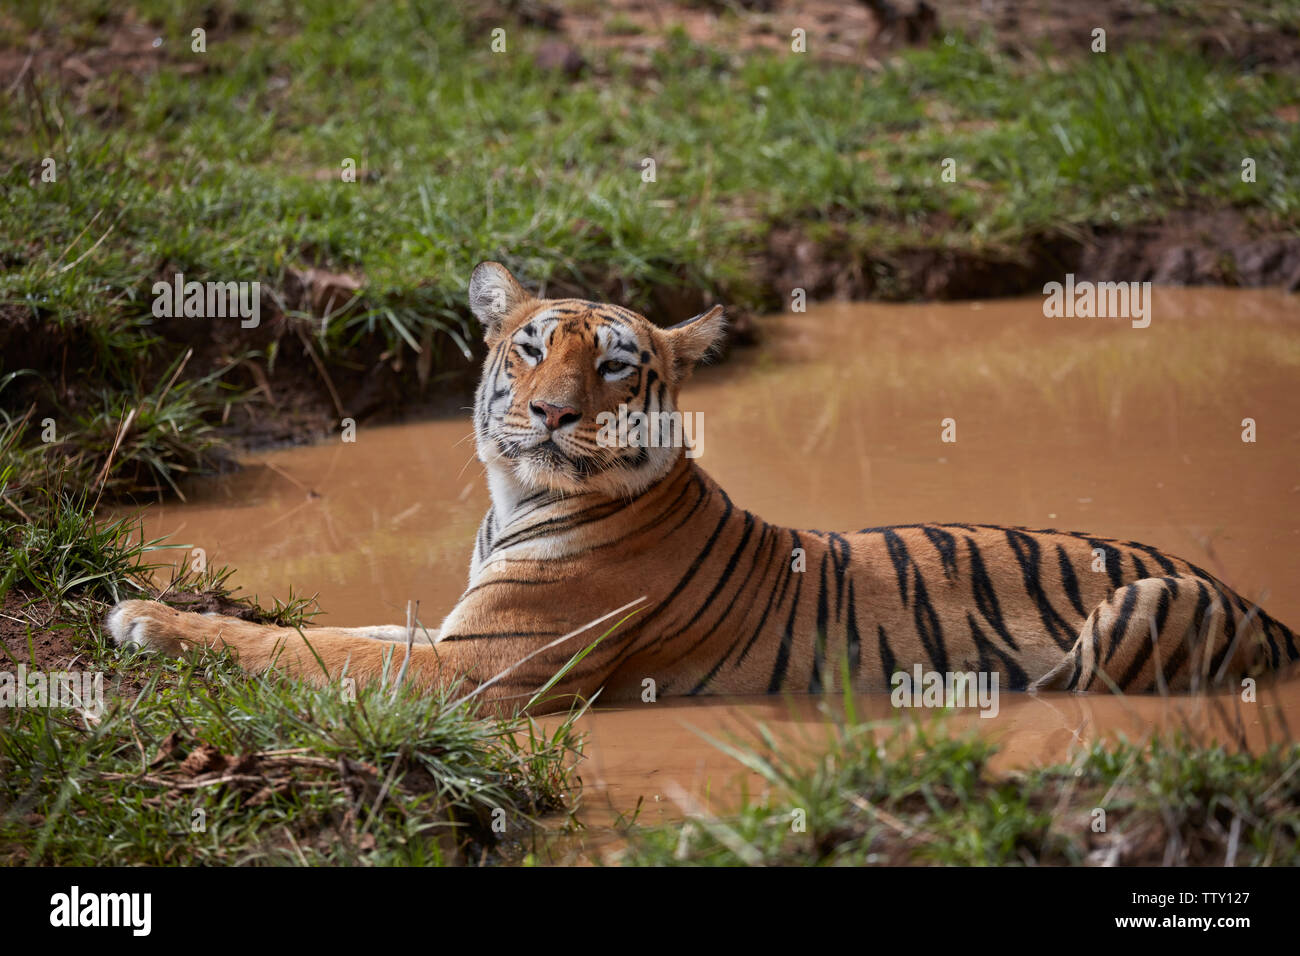 Bengal Tigress Maya at Tadoba forest, India. Stock Photo